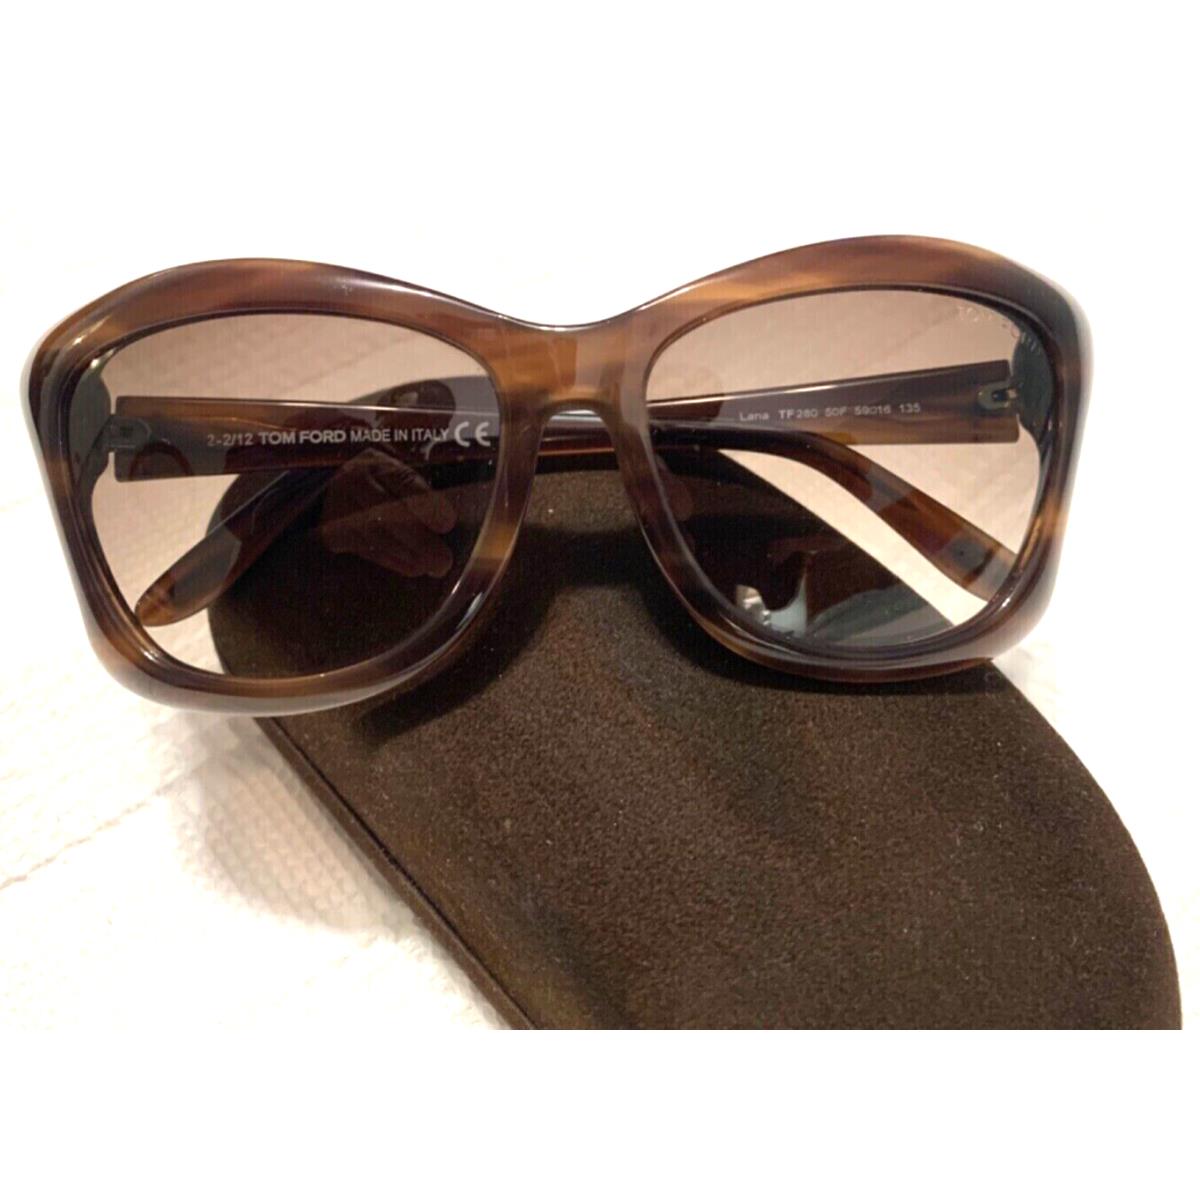 Tom Ford sunglasses  - Frame: BROWN TORTOISE, Lens: BROWN 0